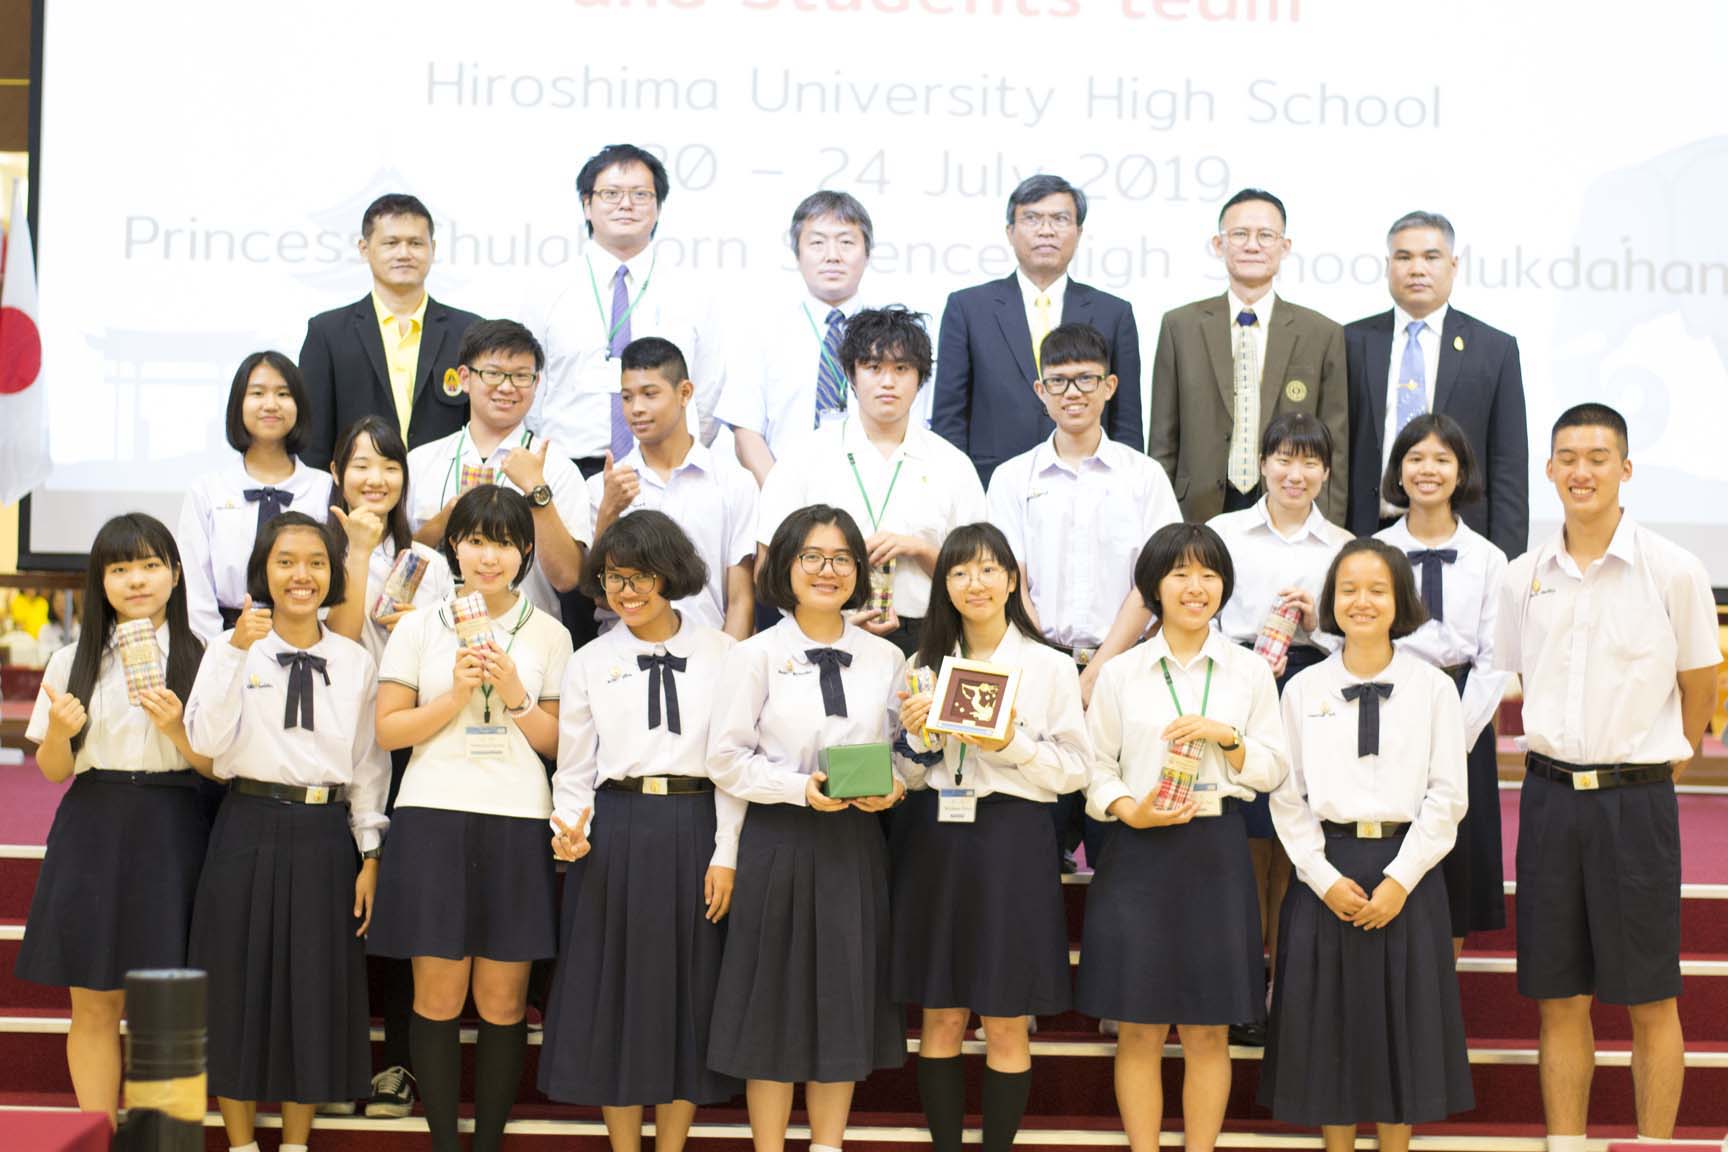 ต้อนรับคณะครูและนักเรียนจากประเทศญี่ปุ่นโรงเรียน-Hiroshima University High School